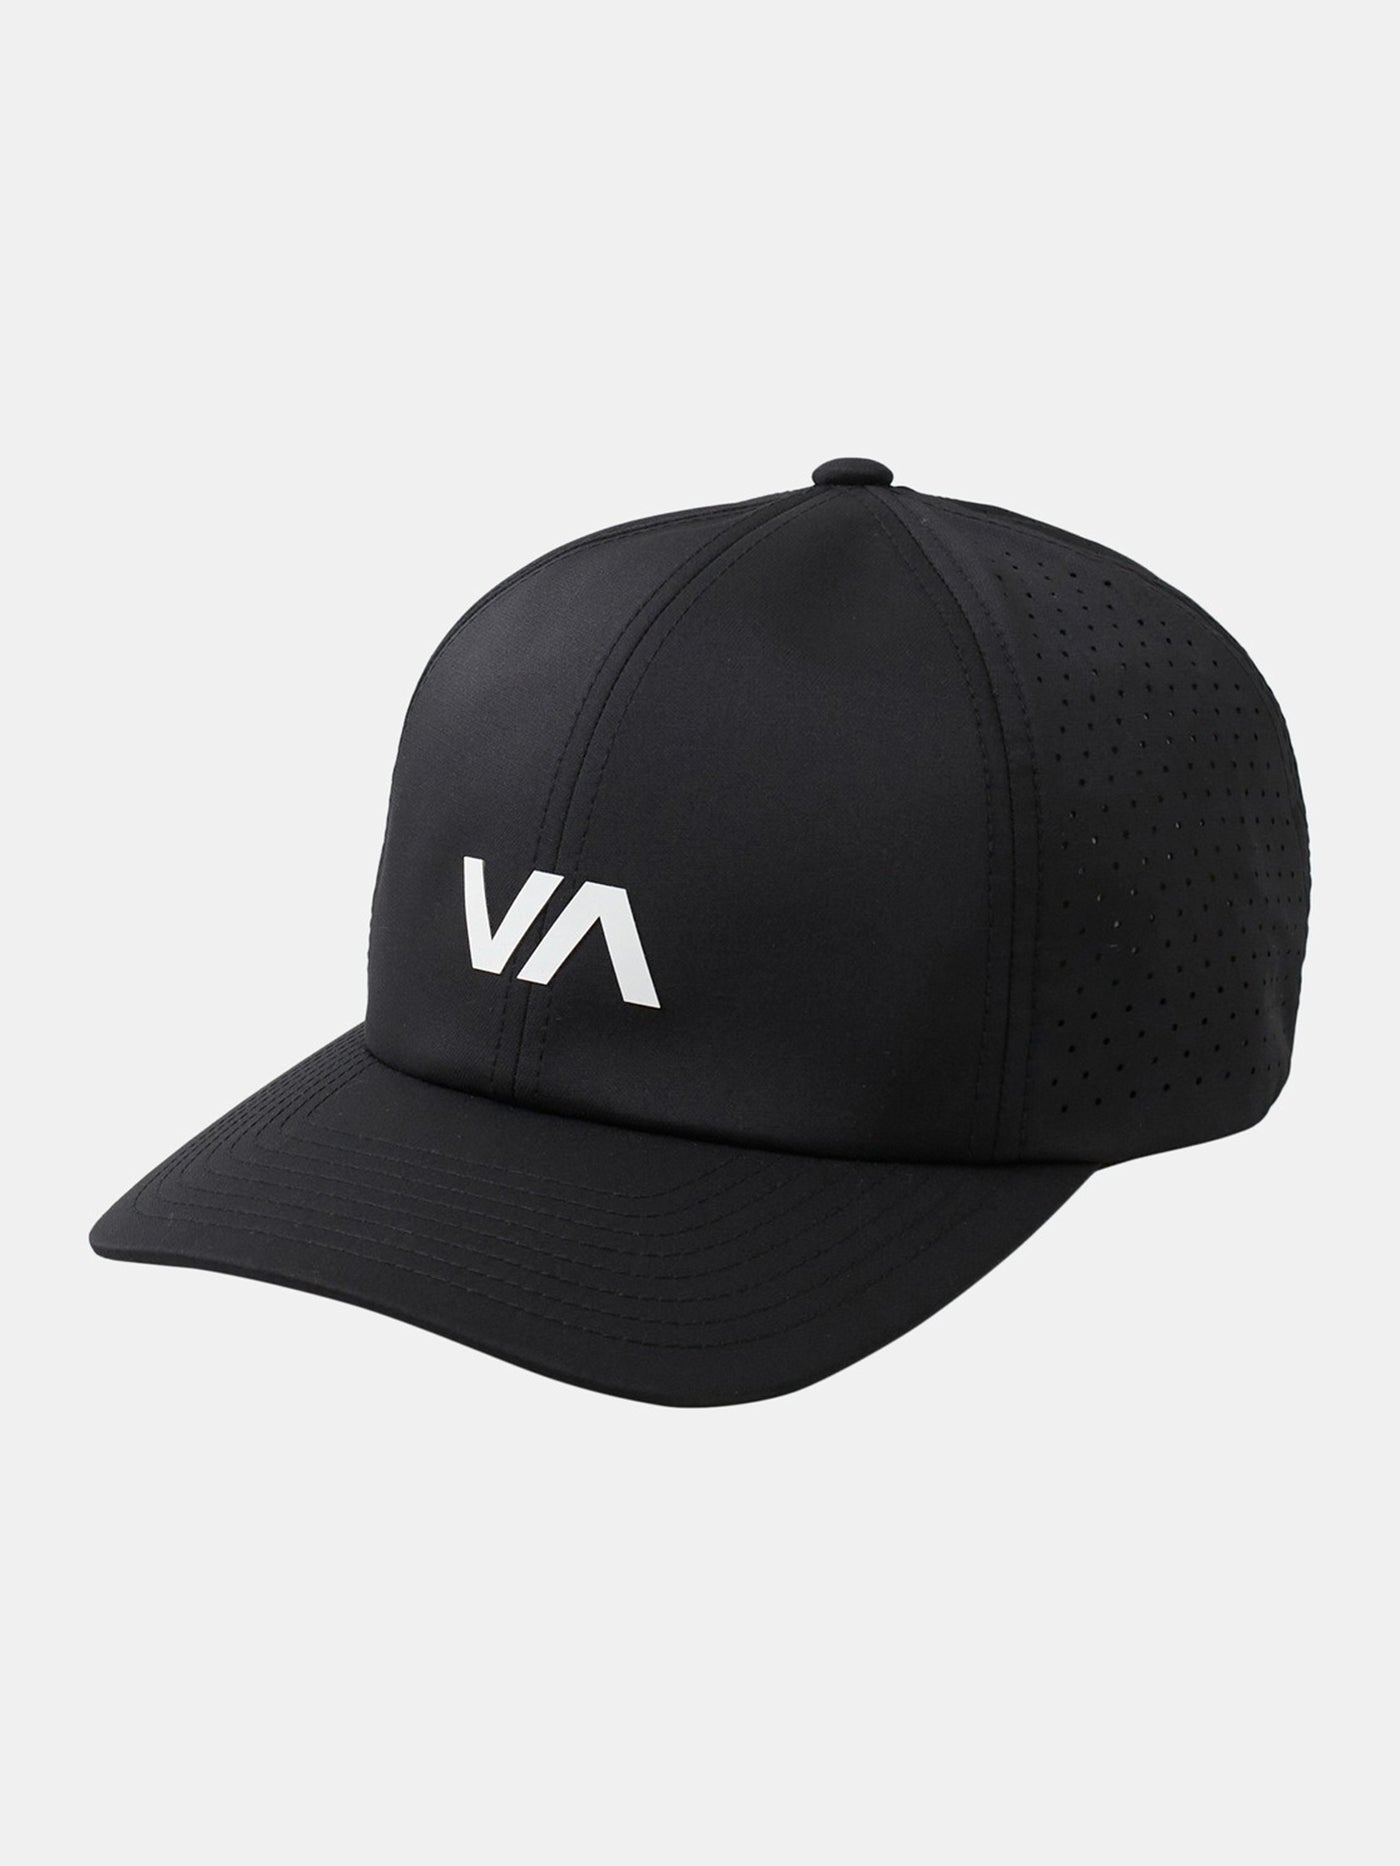 RVCA VA Vent II Hat